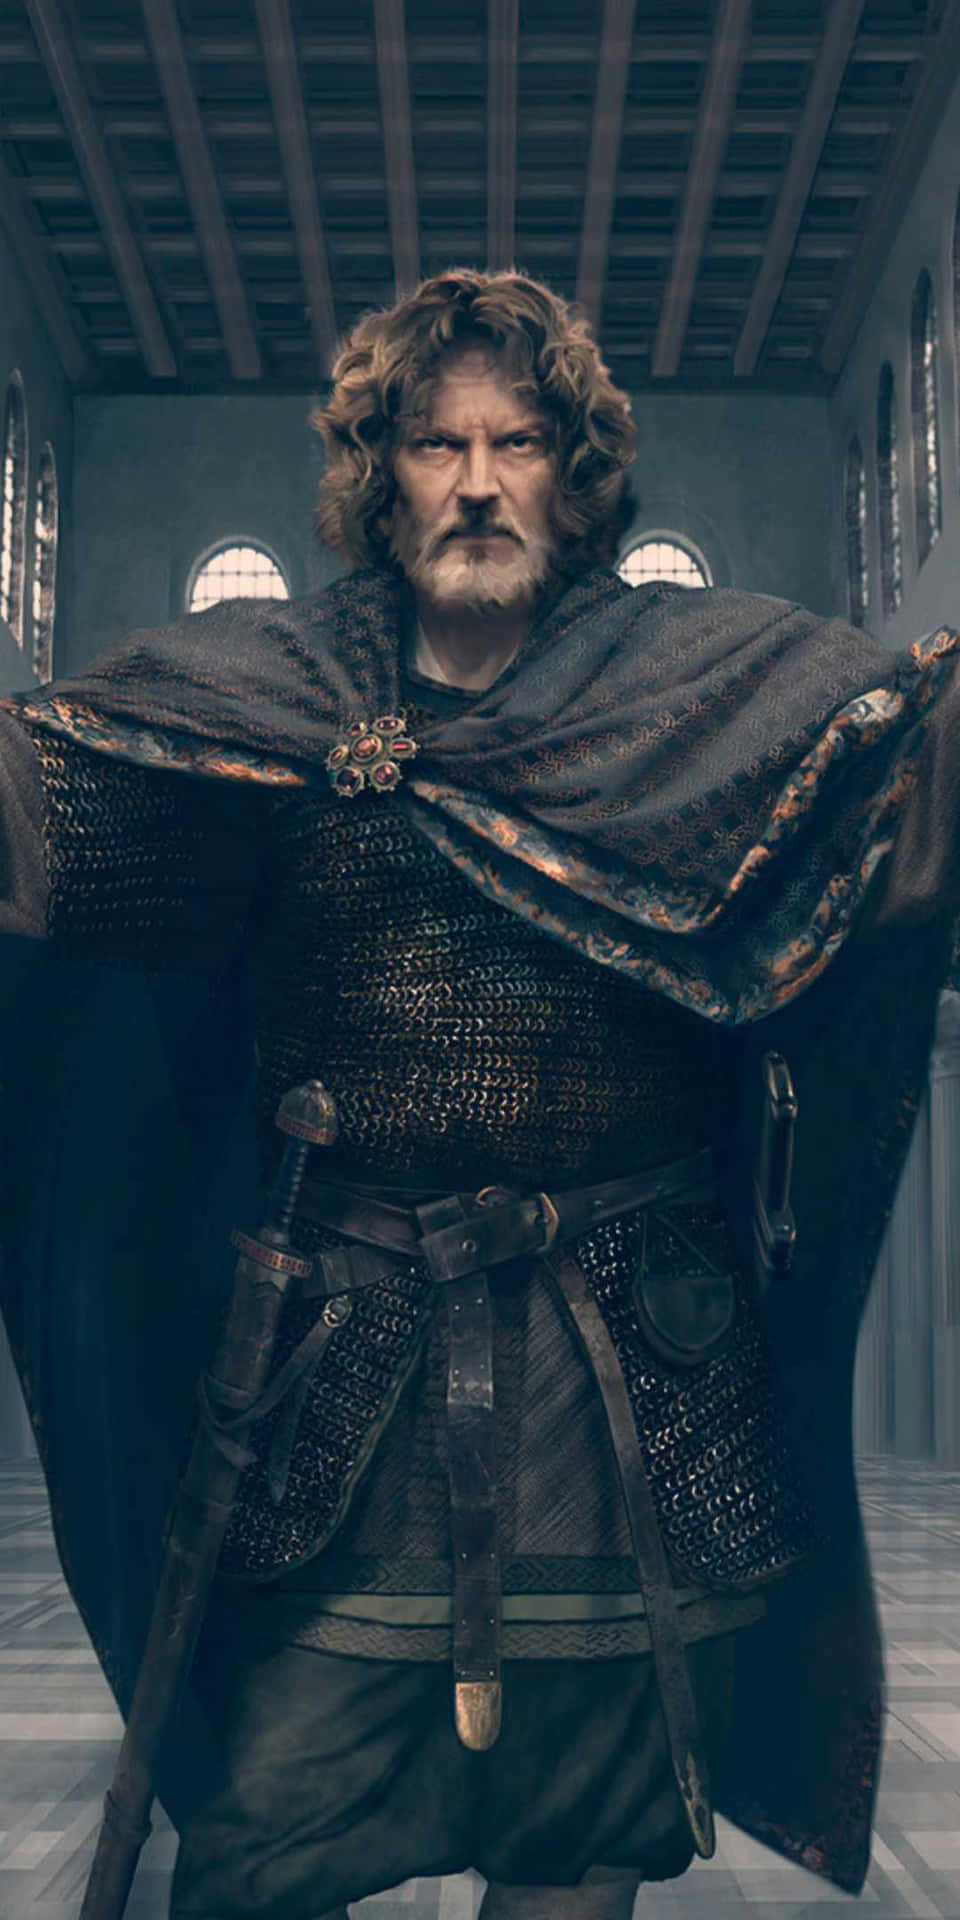 Pixel3 Bakgrundsbild Med Total War Attila Age Of Charlemagne Motiv.